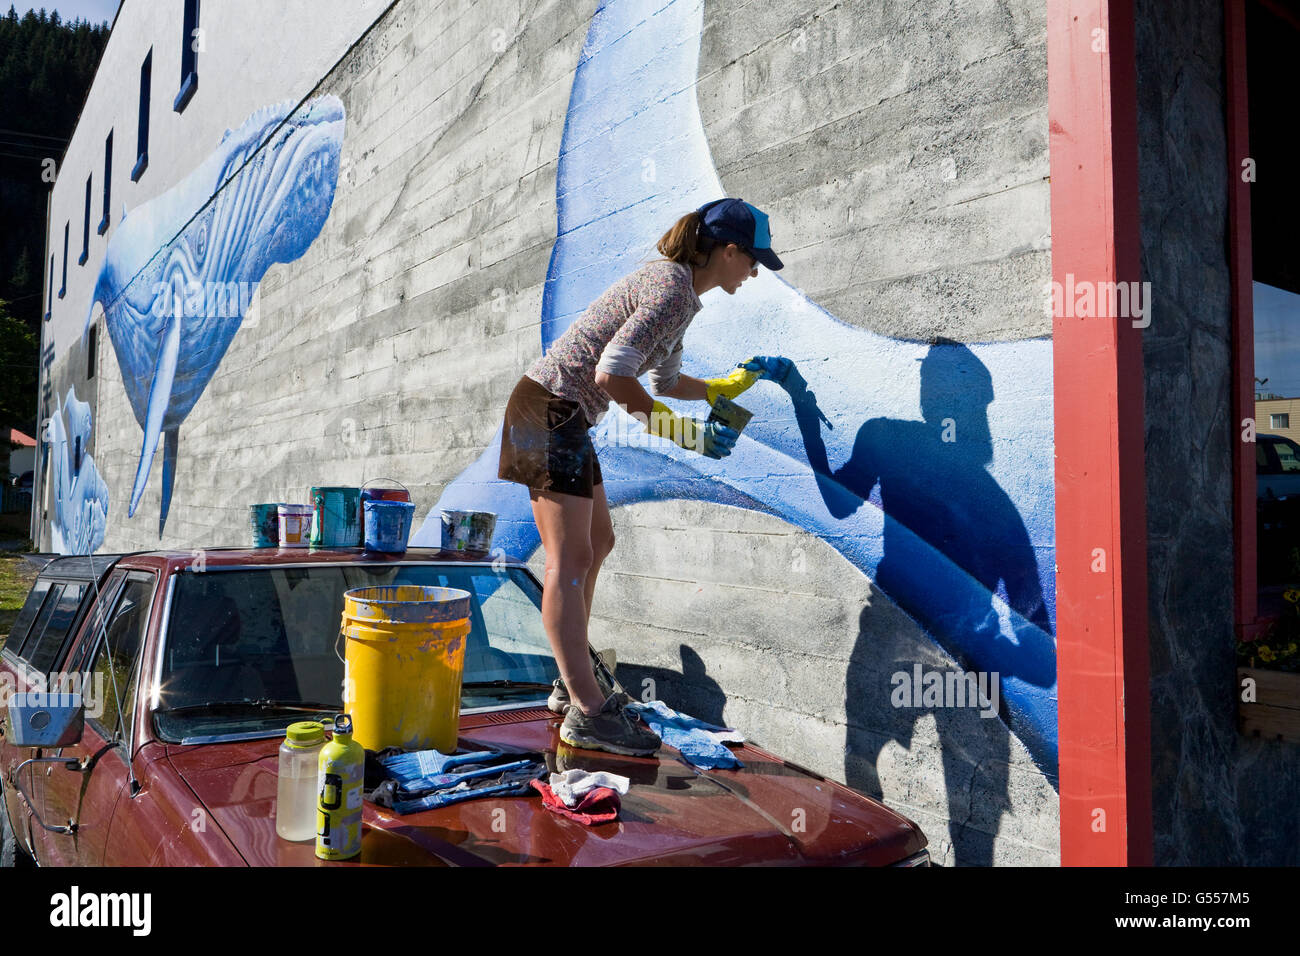 Artista Justine Pechuzal su pintura mural 'Sea-ward Bound" que representan las ballenas jorobadas (Megaptera novaeangliae) en una pared. Foto de stock